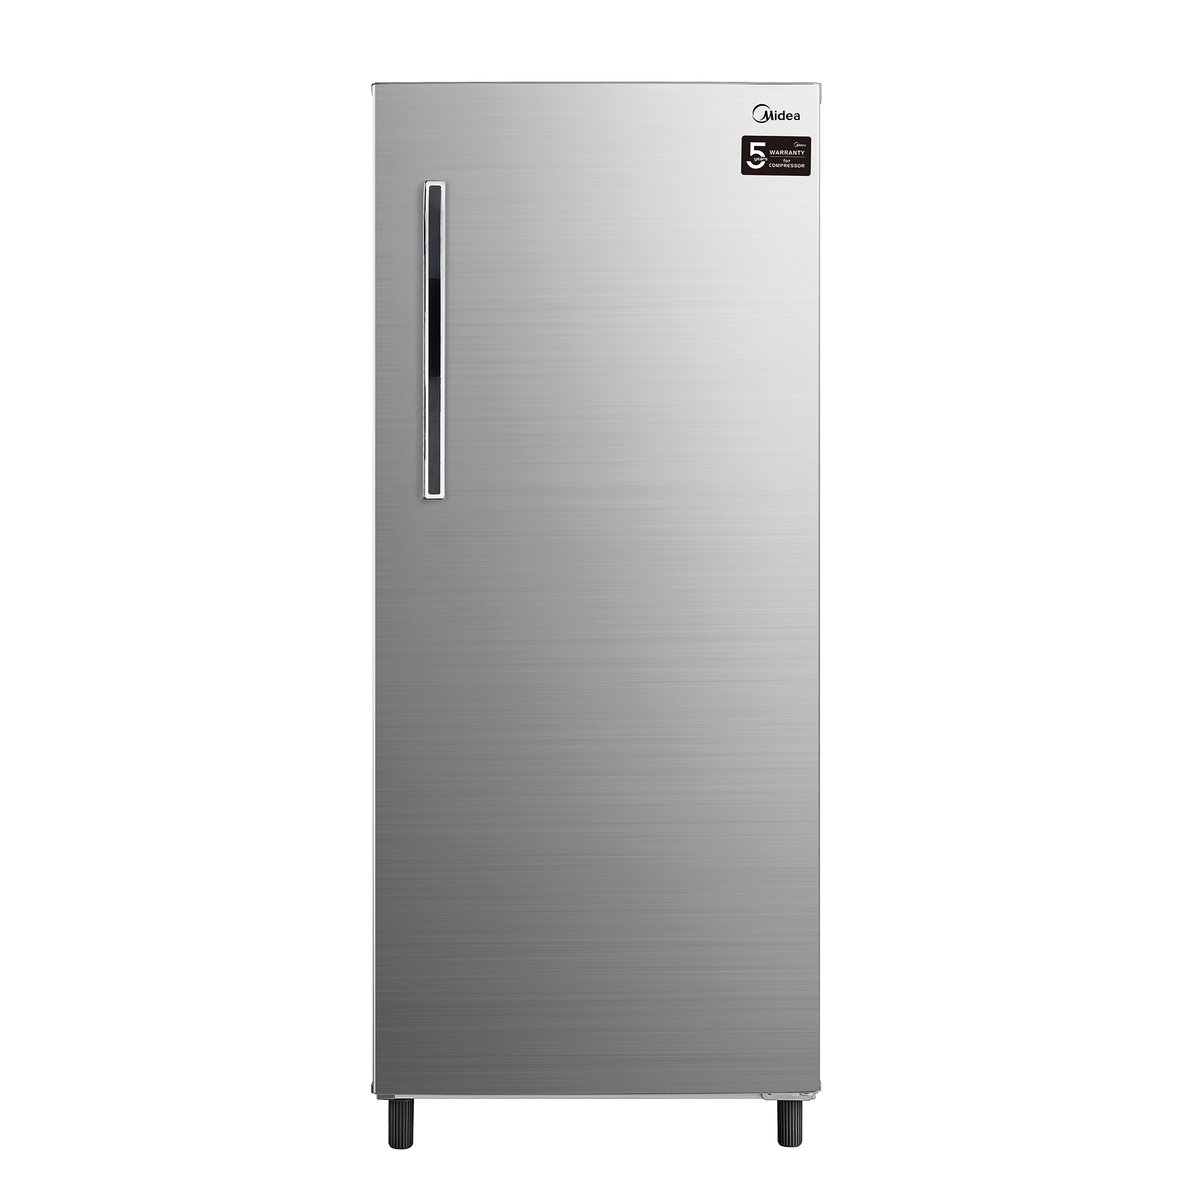 Midea Single Door Refrigerator HS235L 235Ltr